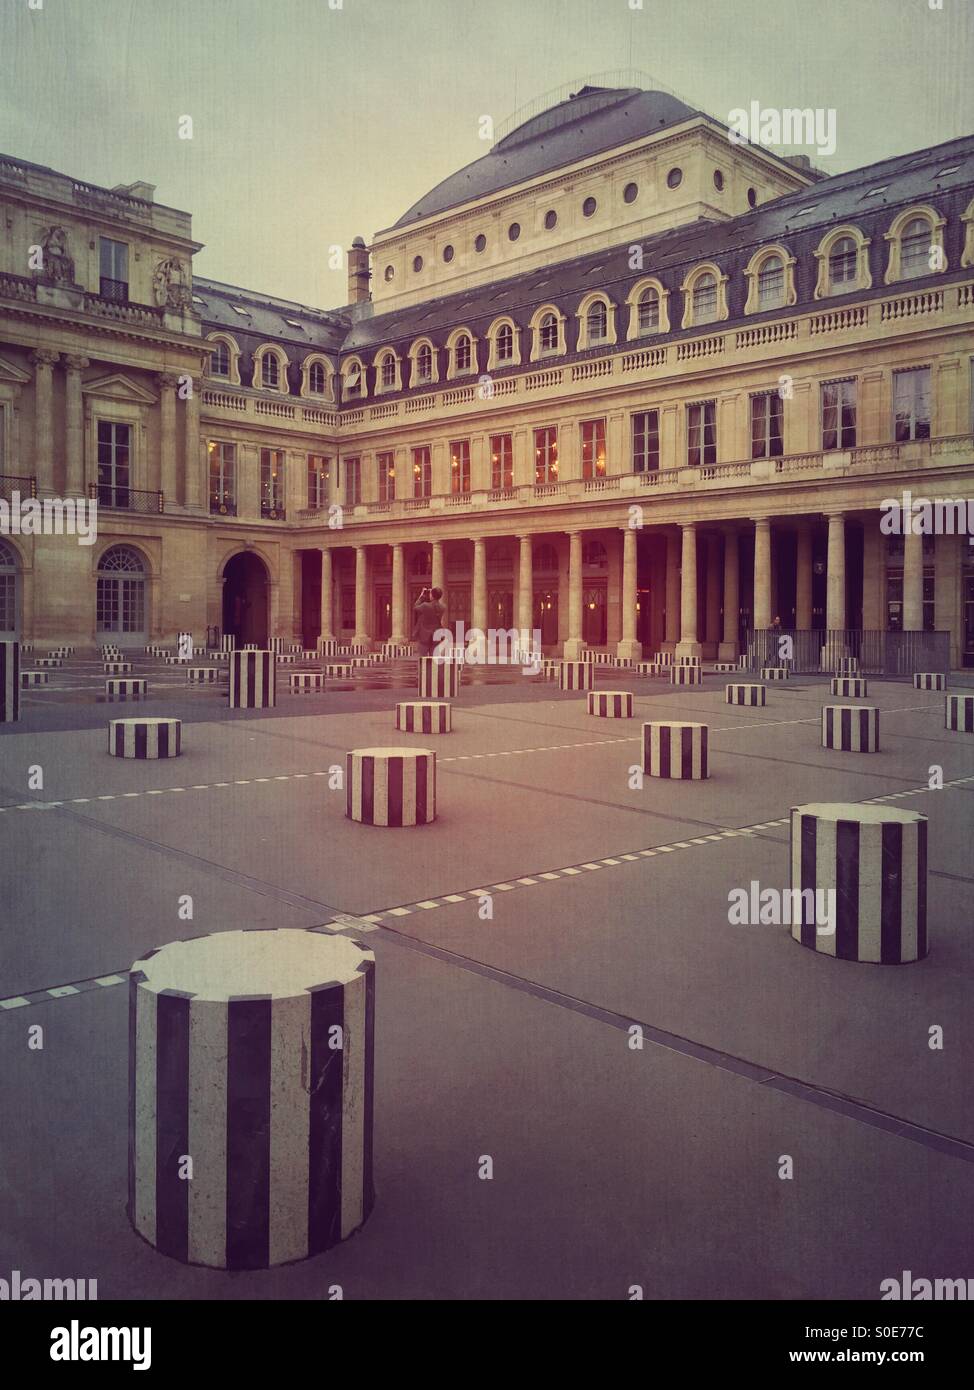 Vista del patio principal en la Place du Palais-Royal en París, Francia. Les Deux Plateaux instalación por Daniel Buren compuesto de cilindros seccionados hecha de mármol blanco de Carrara y negro mármol pirenaico. Foto de stock